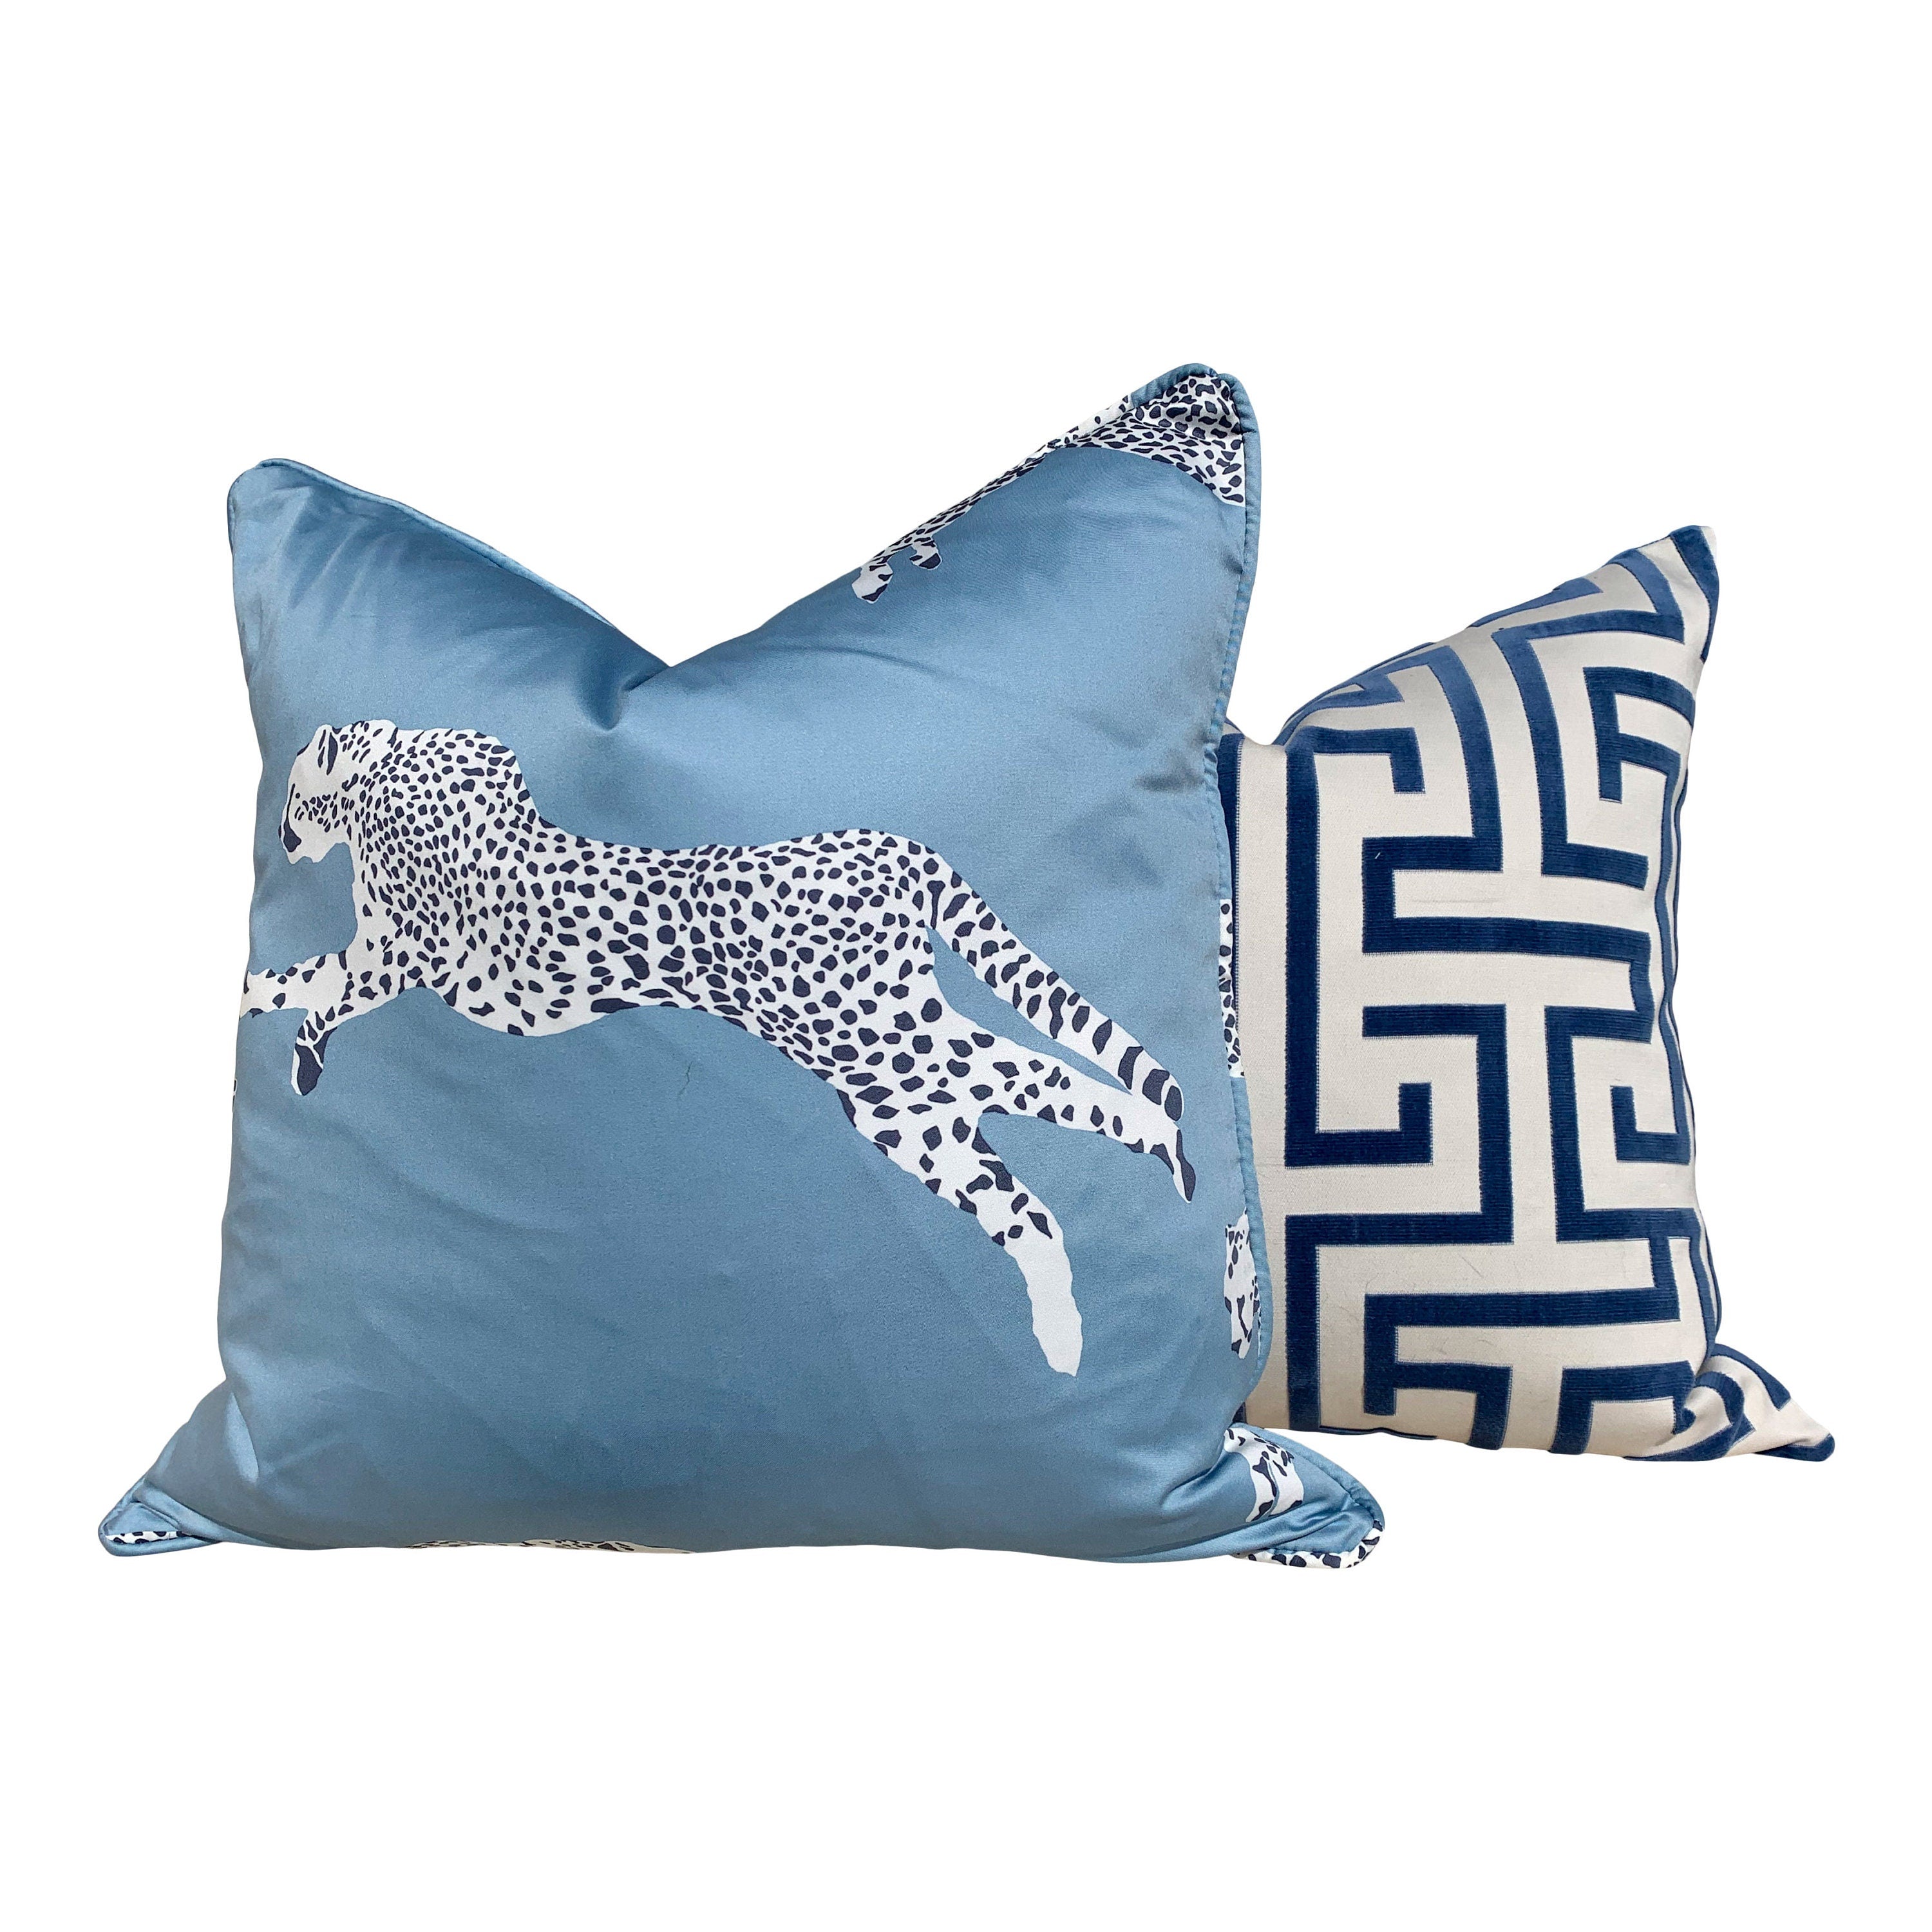 Ming Trail Pillow Ocean Blue. Lumbar Pillow, Chinoiserie Pillow, Blue and White Pillows, Velvet Bolster, Trellis Blue Pillow, Greek Key maze